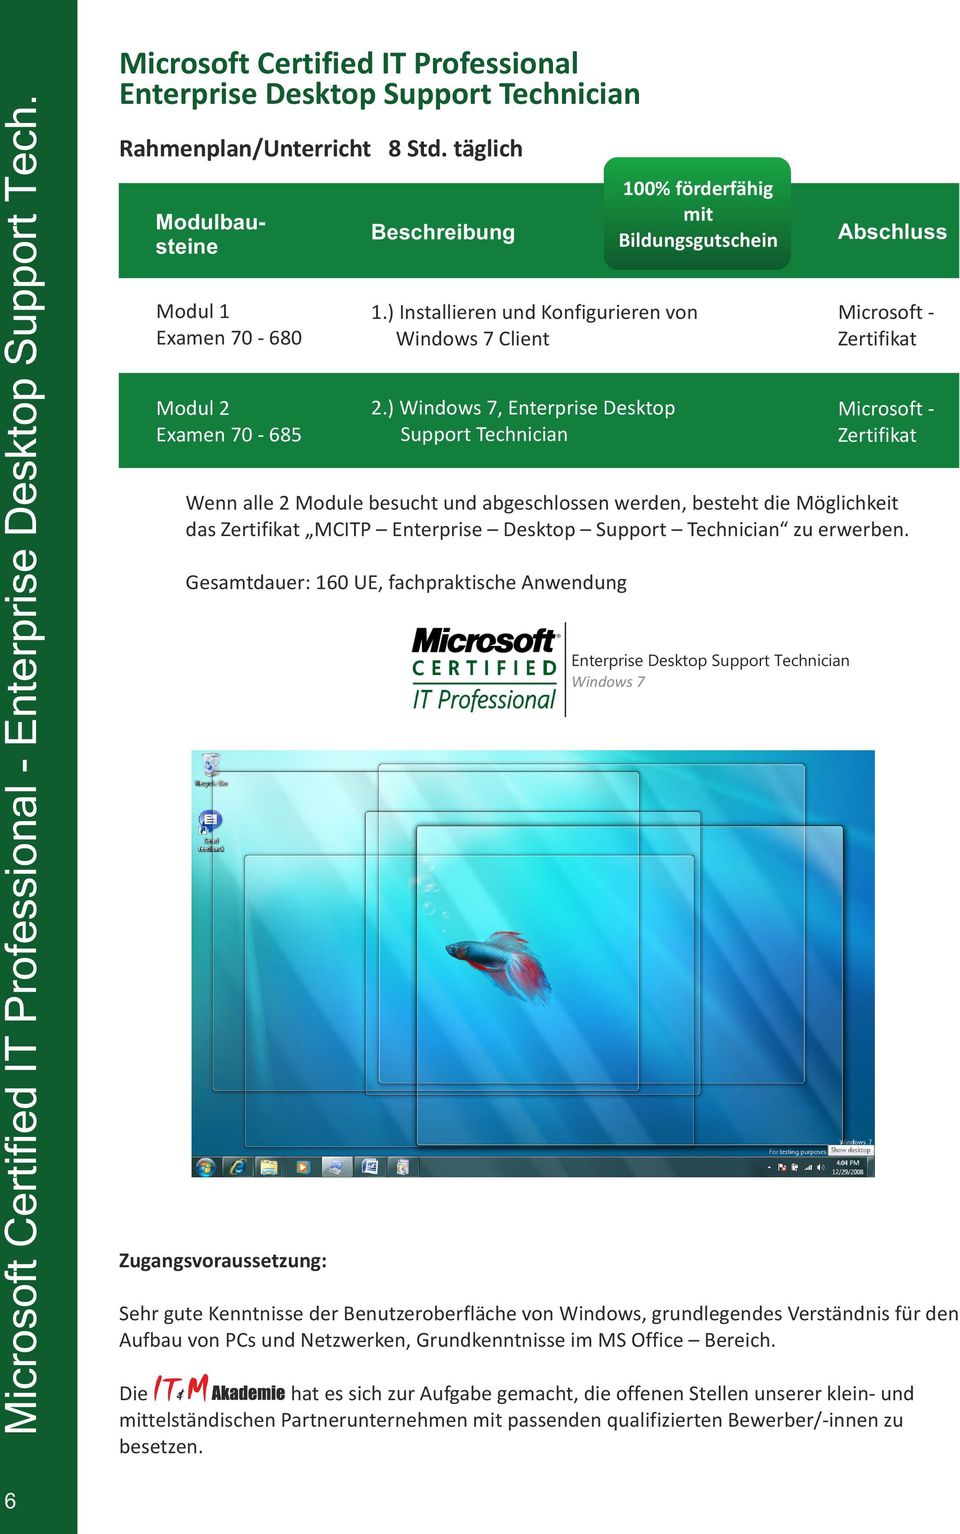 ) Windows 7, Enterprise Desktop Support Technician Microsoft Zertifikat Abschluss Wenn alle 2 Module besucht und abgeschlossen werden, besteht die Möglichkeit das Zertifikat MCITP Enterprise Desktop